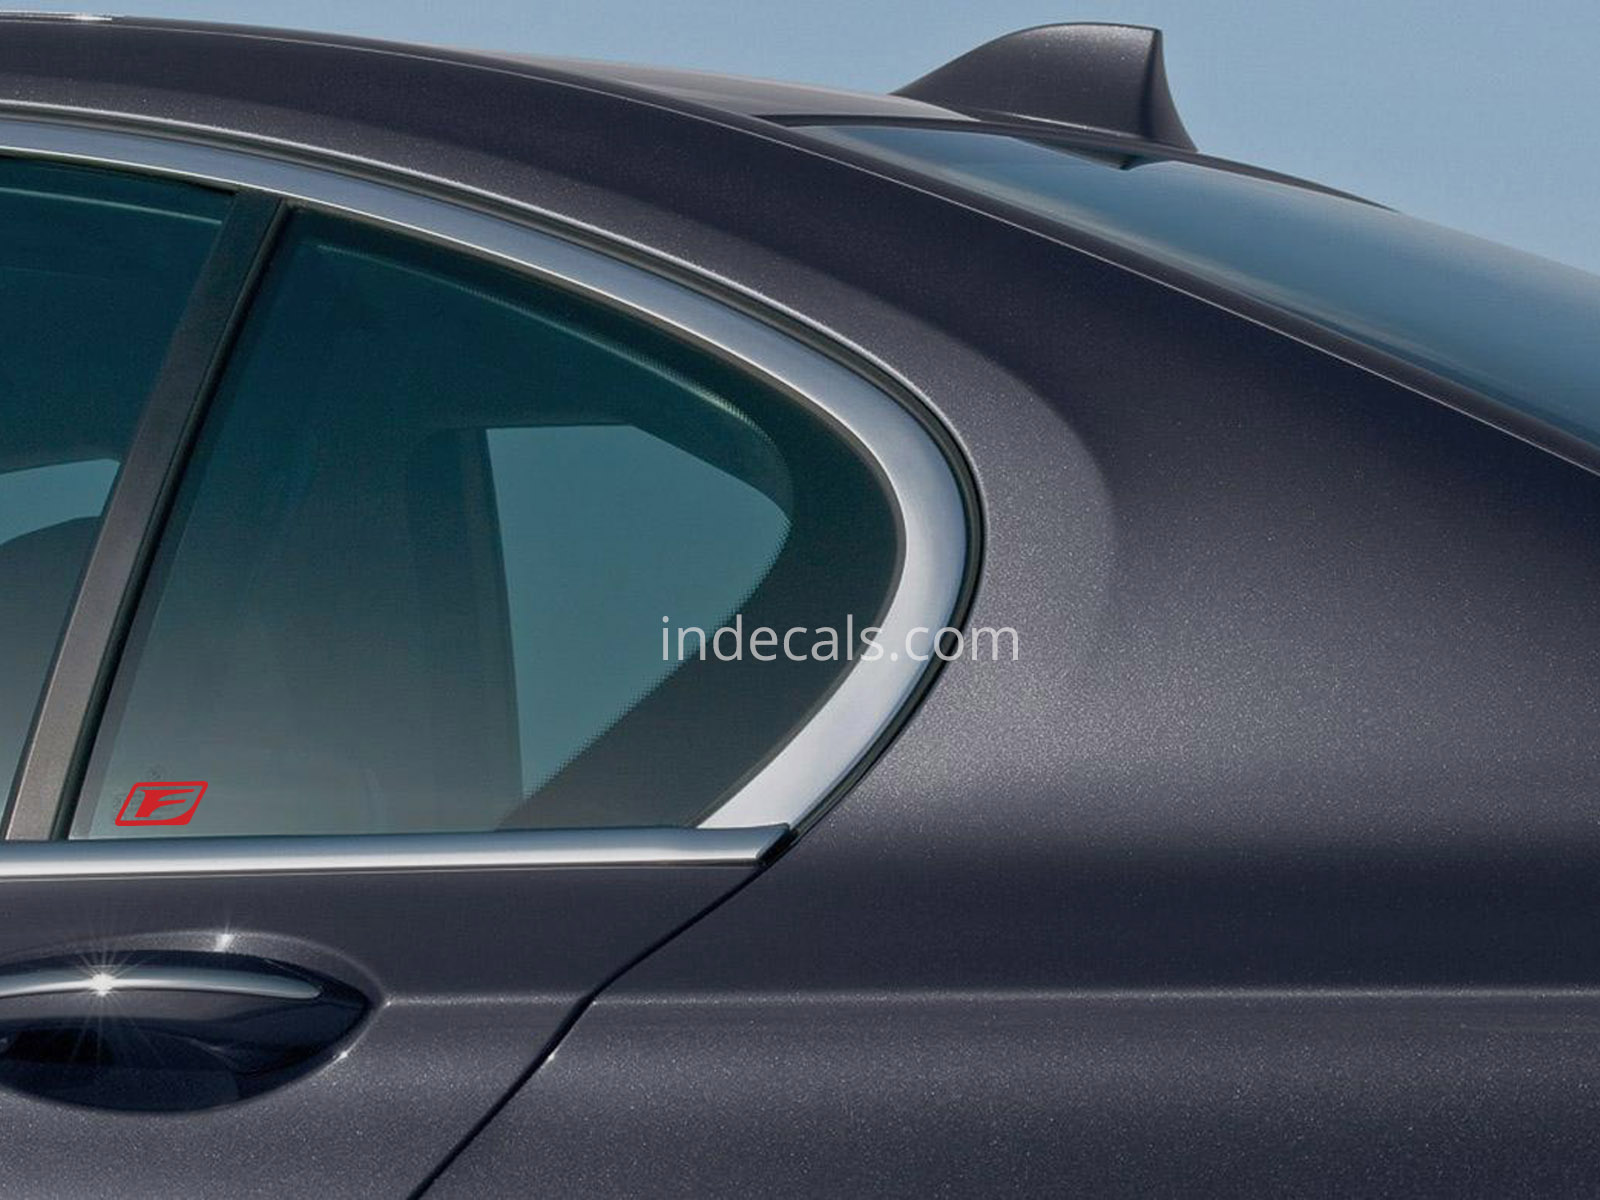 3 x Lexus F-sport Stickers for Rear Window - Red